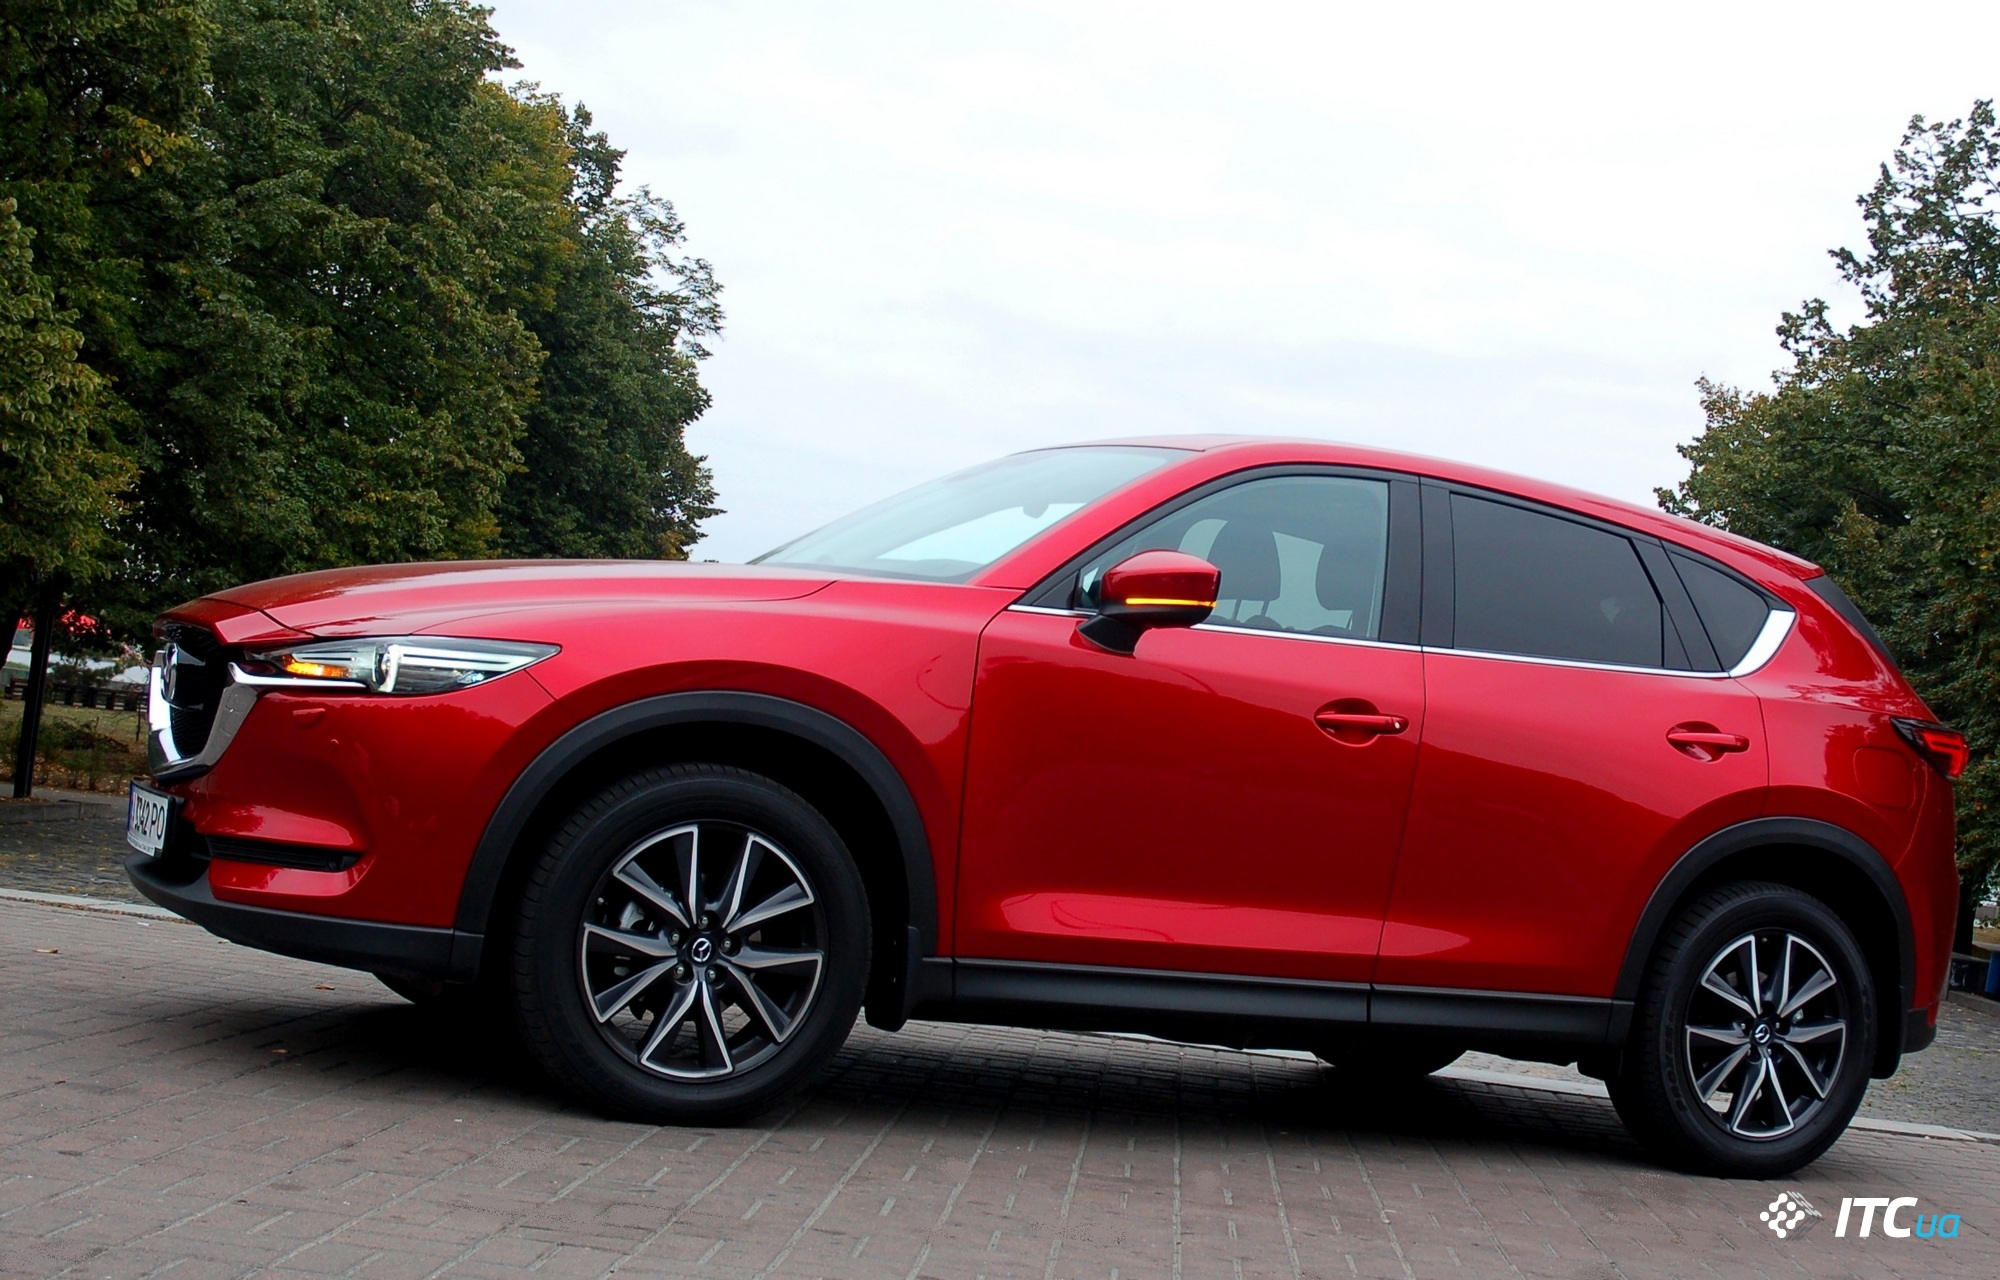 У статті представлений кросовер Mazda CX-5 другого покоління з бензиновим мотором об'ємом 2,5 л і 6-ст